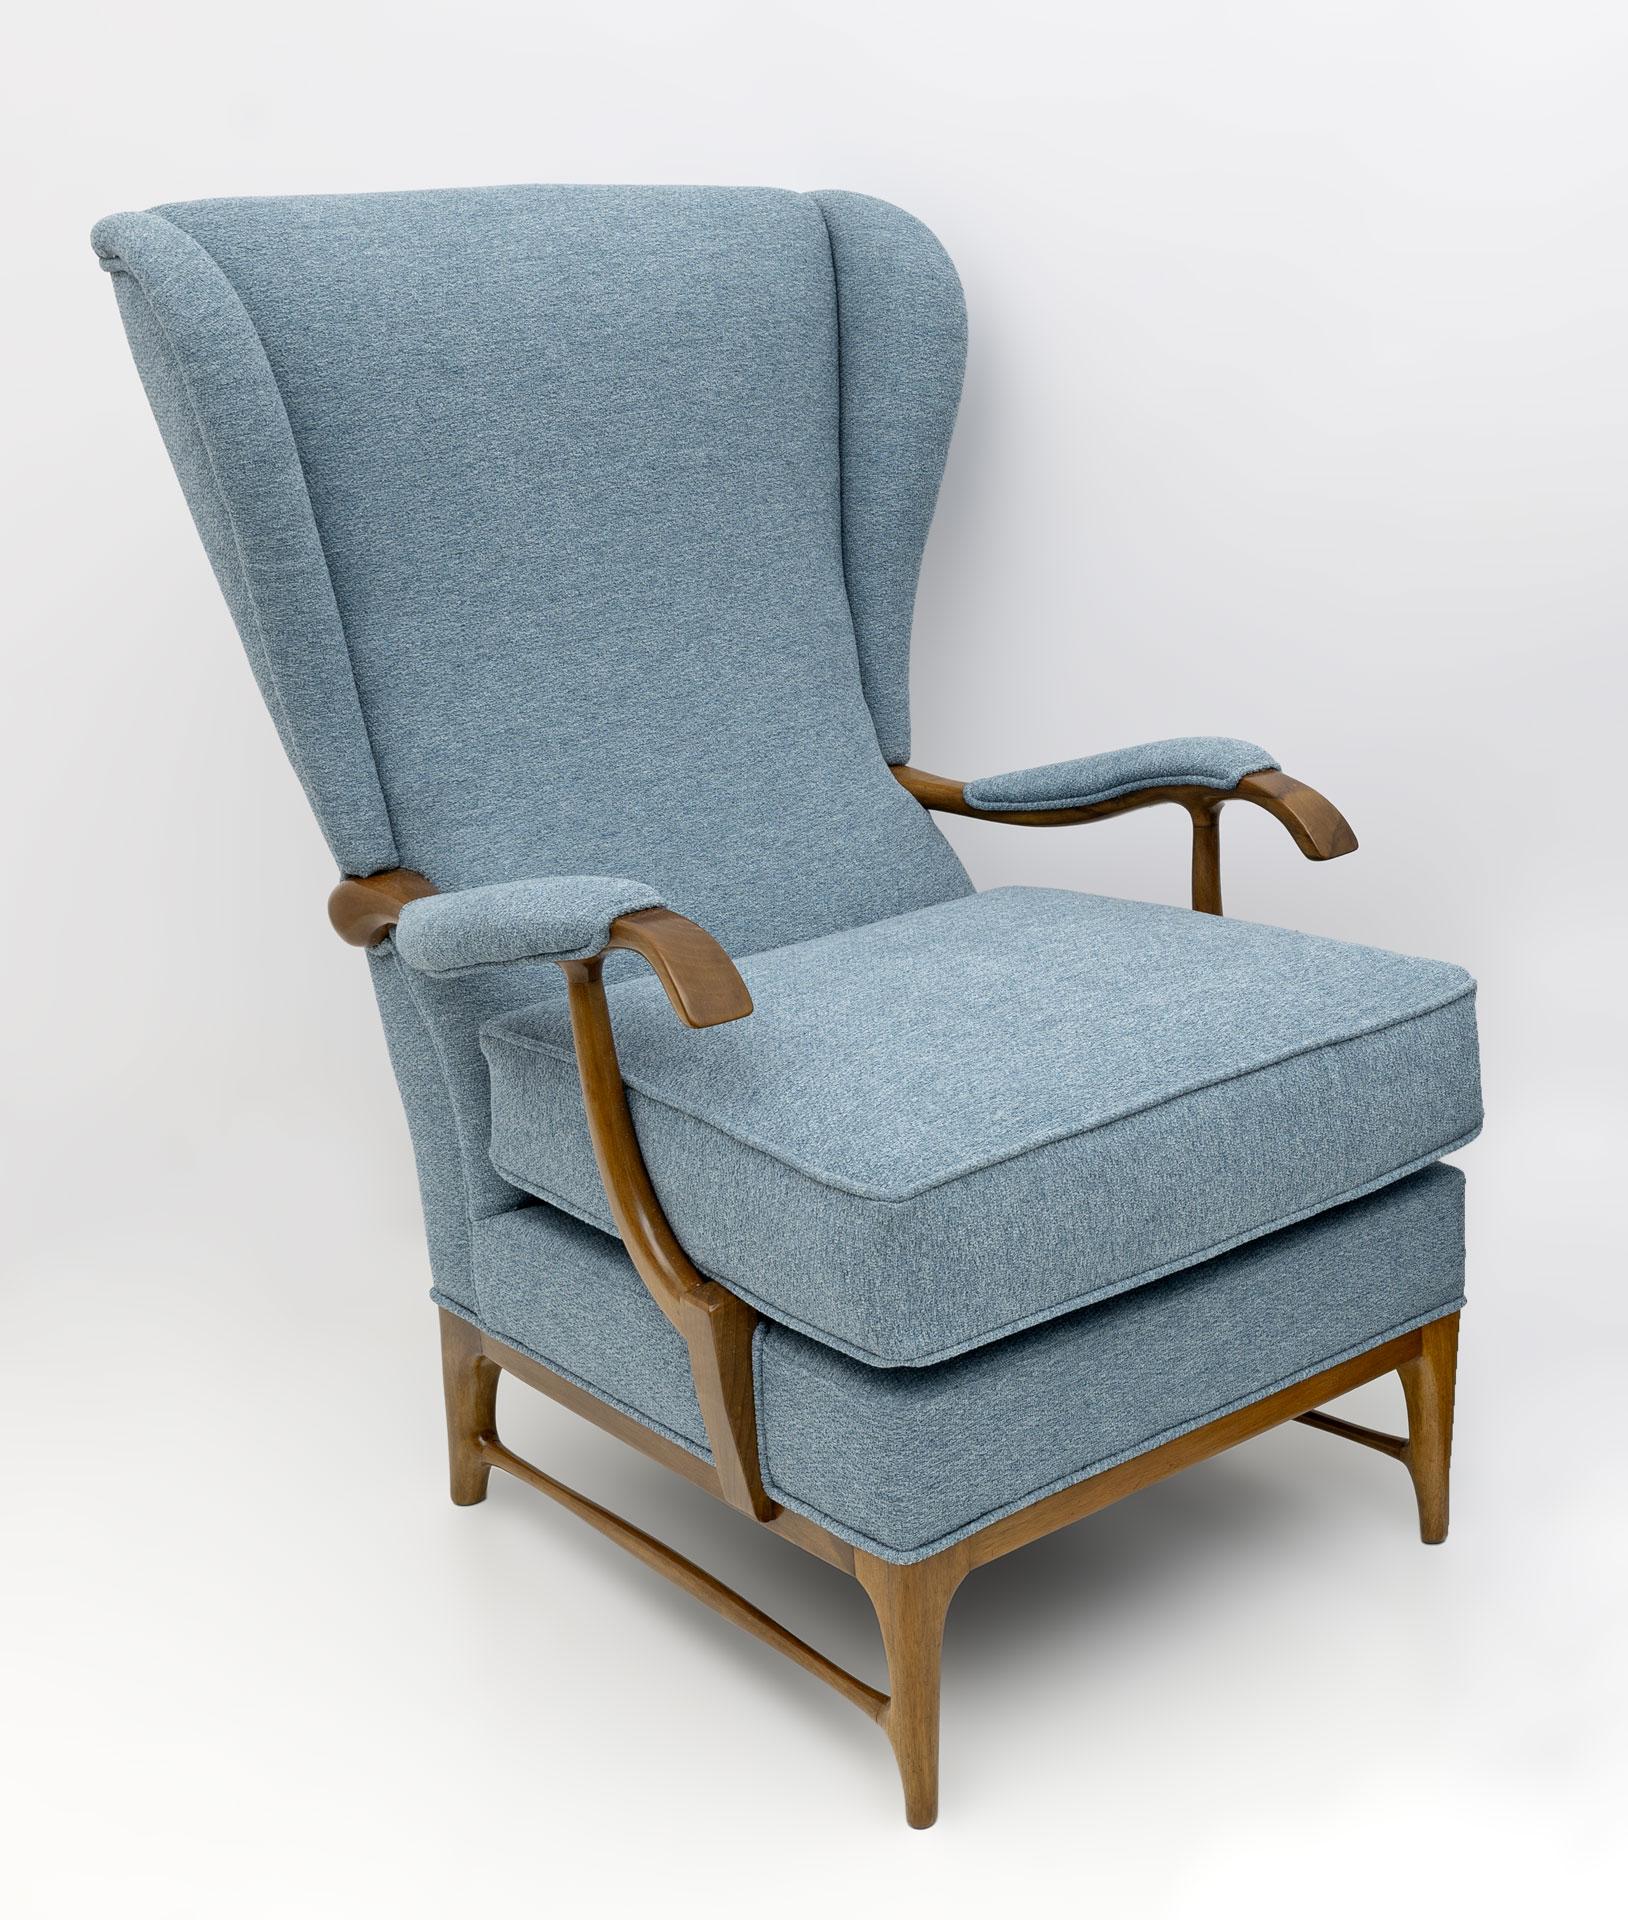 Ein Paar Ohrensessel, entworfen von Paolo Buffa und hergestellt von Framar in den 1950er Jahren. Die Sessel wurden restauriert und mit zuckerpapierfarbenem Bouclé-Stoff gepolstert. Paolo Buffa war ein italienischer Designer und Architekt. Er ist